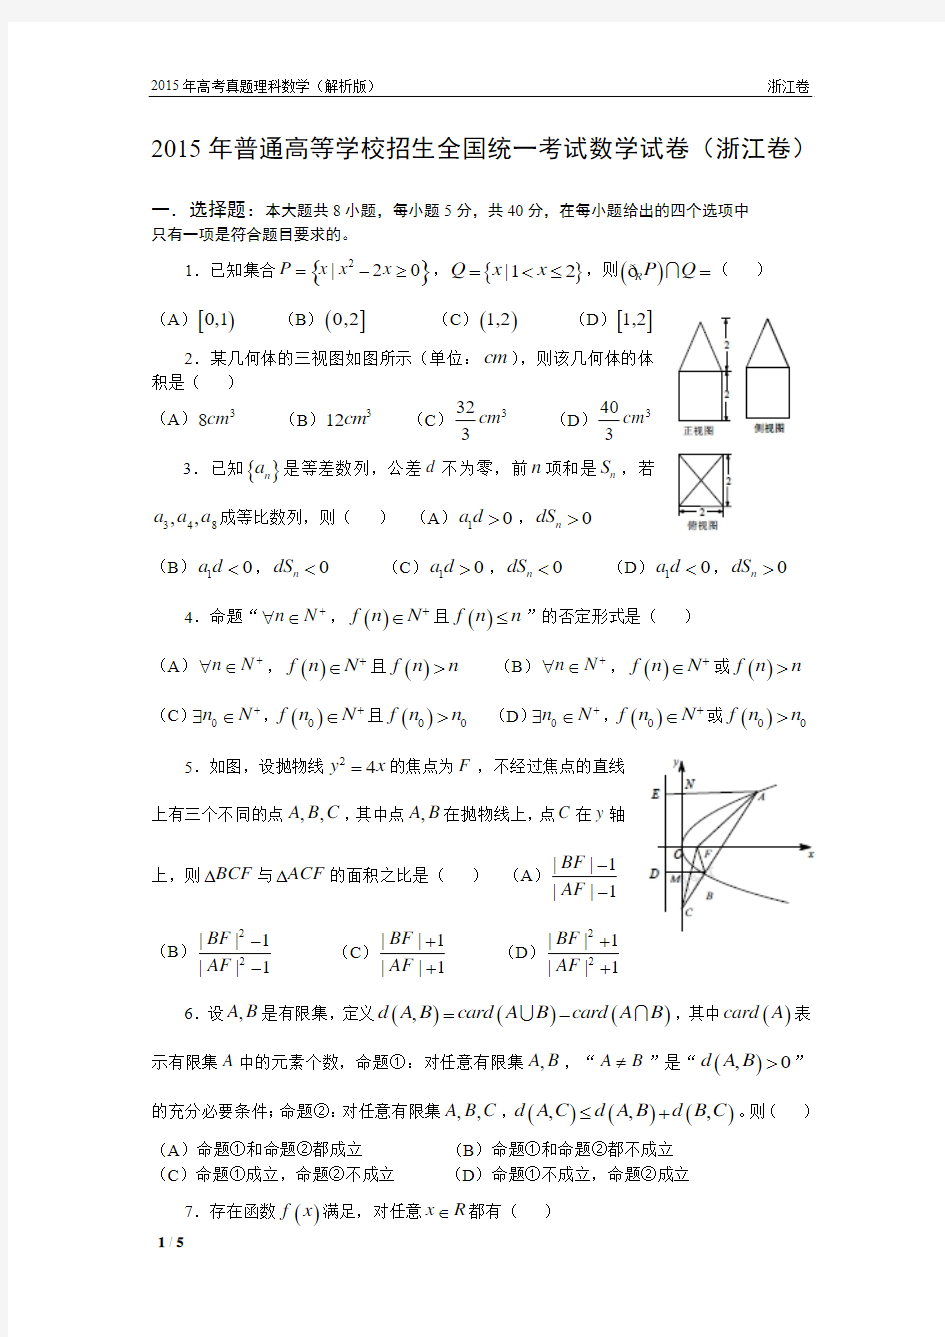 15年高考真题——理科数学(浙江卷)